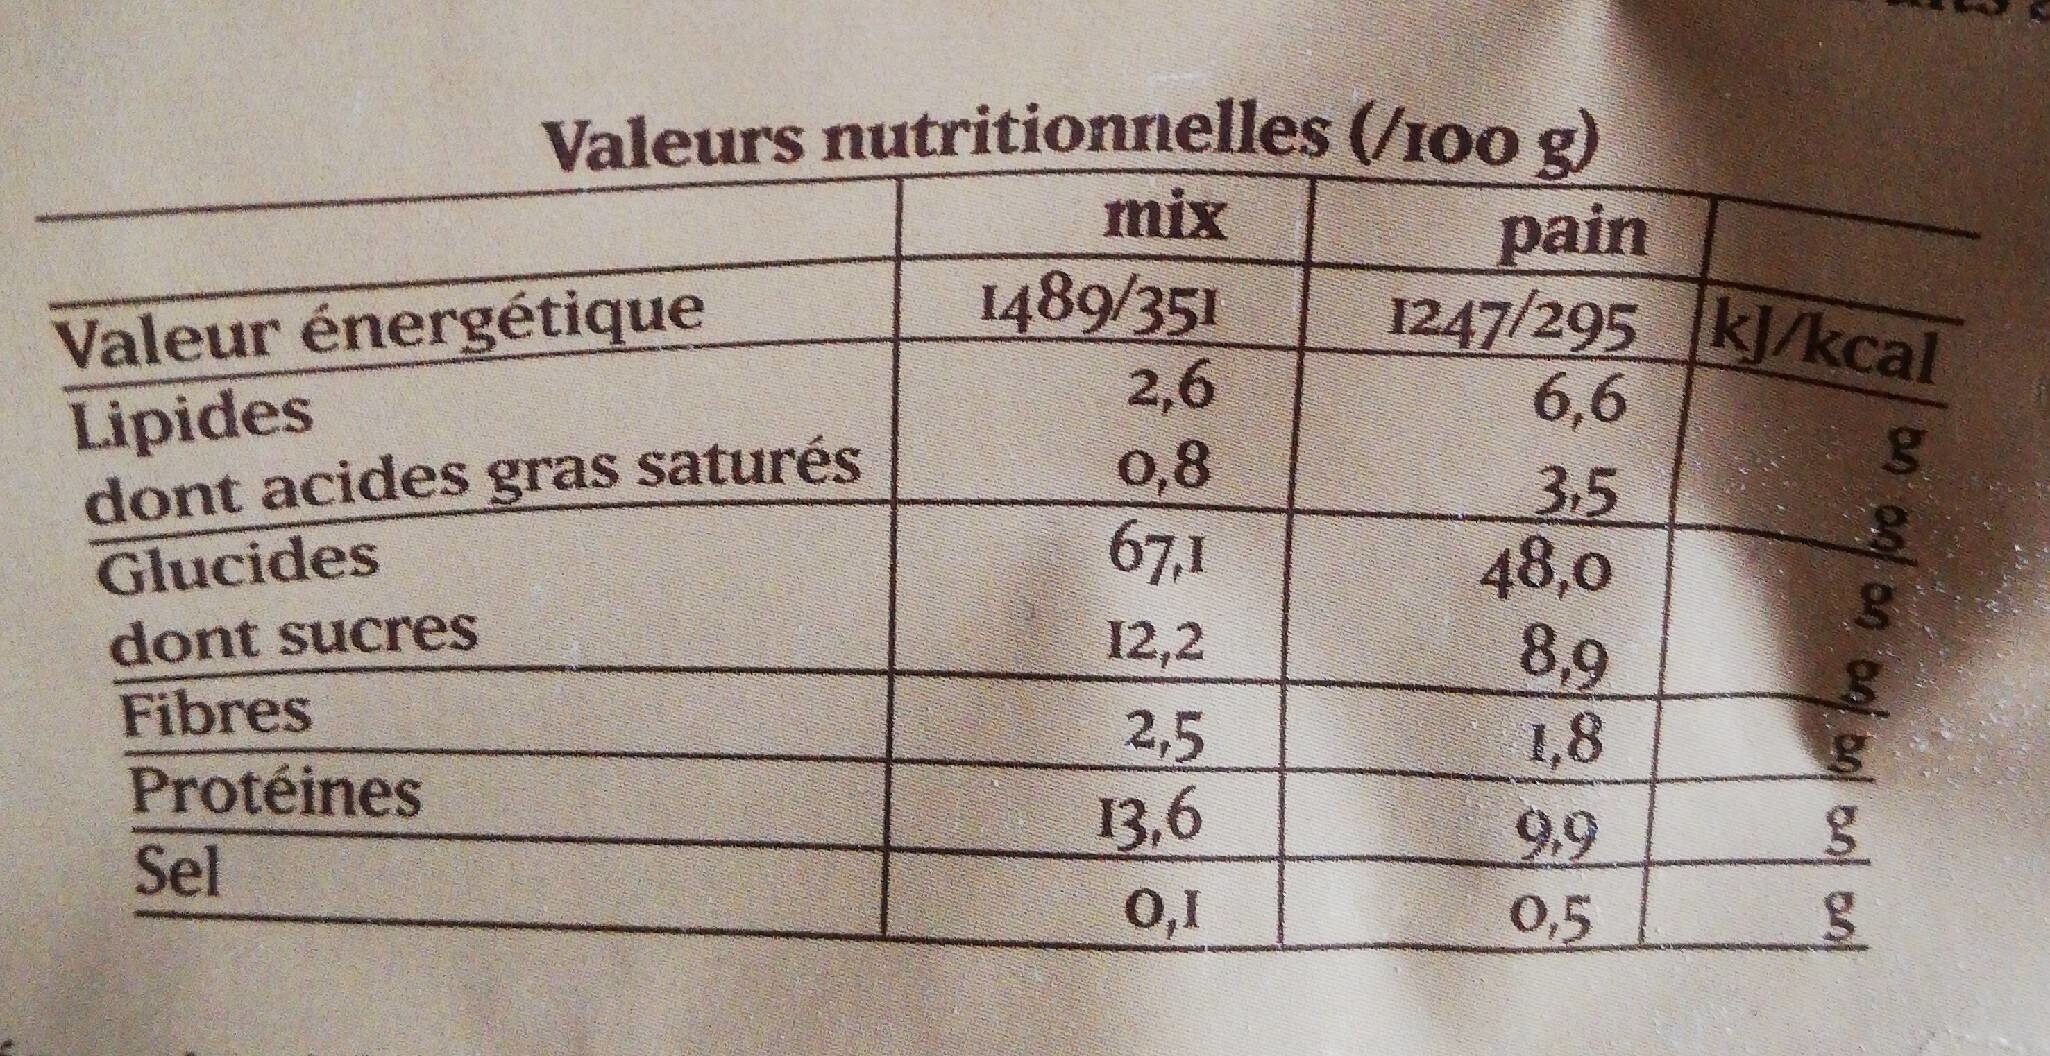 Mux pour brioché fermier - Nutrition facts - fr